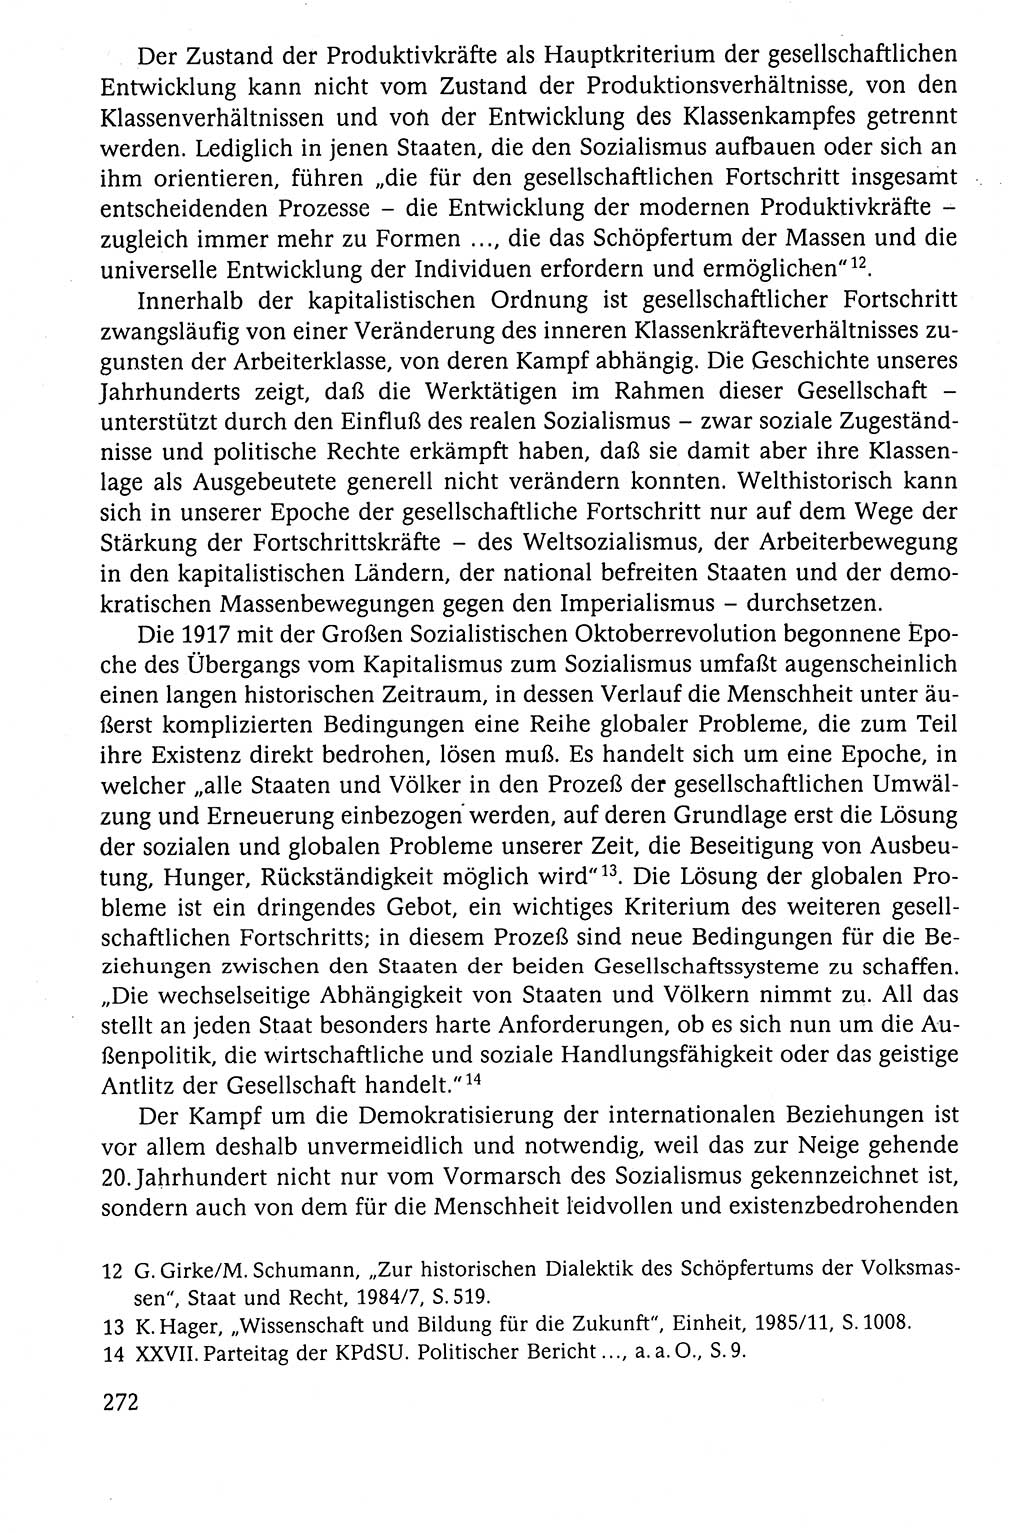 Der Staat im politischen System der DDR (Deutsche Demokratische Republik) 1986, Seite 272 (St. pol. Sys. DDR 1986, S. 272)